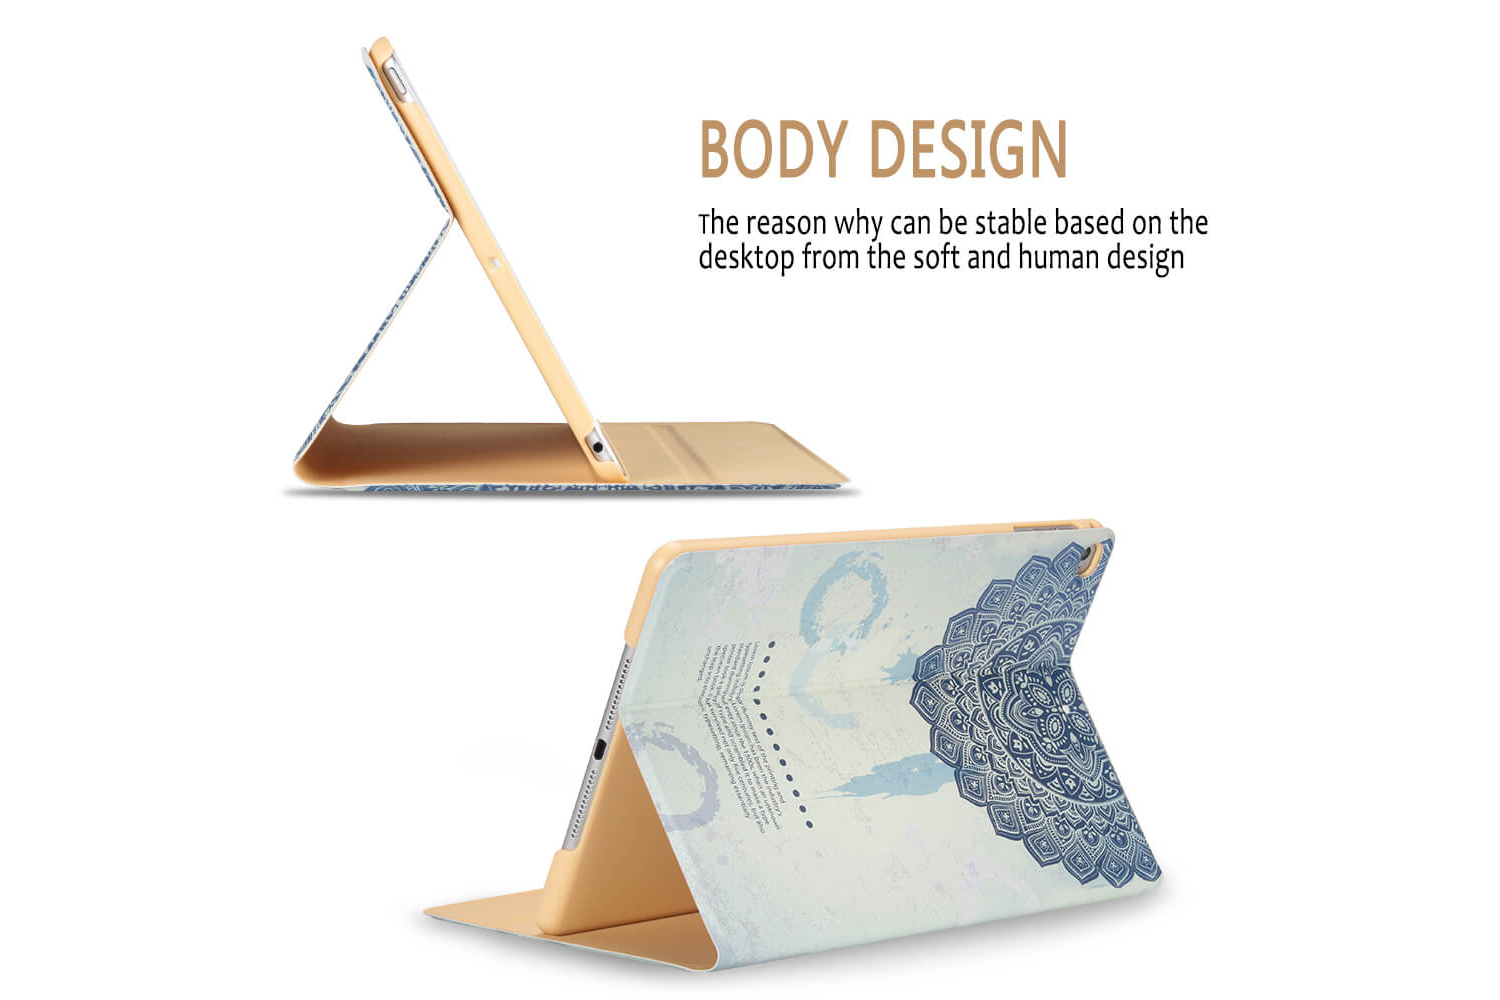 iPad Air 2 design hoes Lorem Ipsum